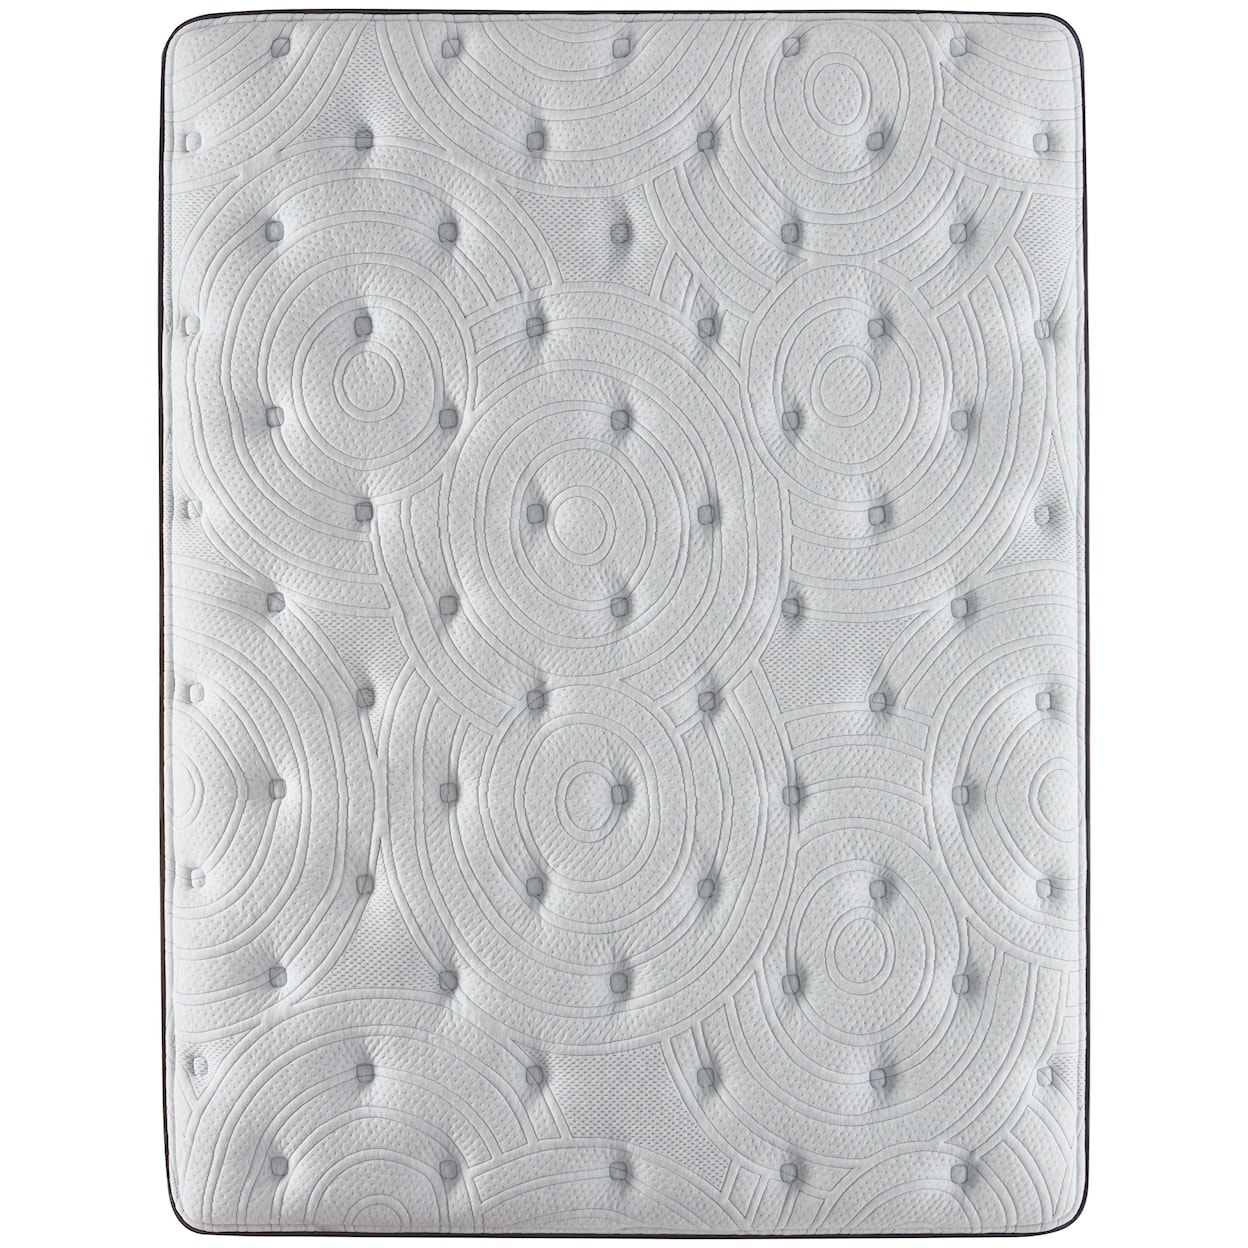 Serta Renewed Sleep Plush PT Twin 17" Plush Pillow Top Low Profile Set